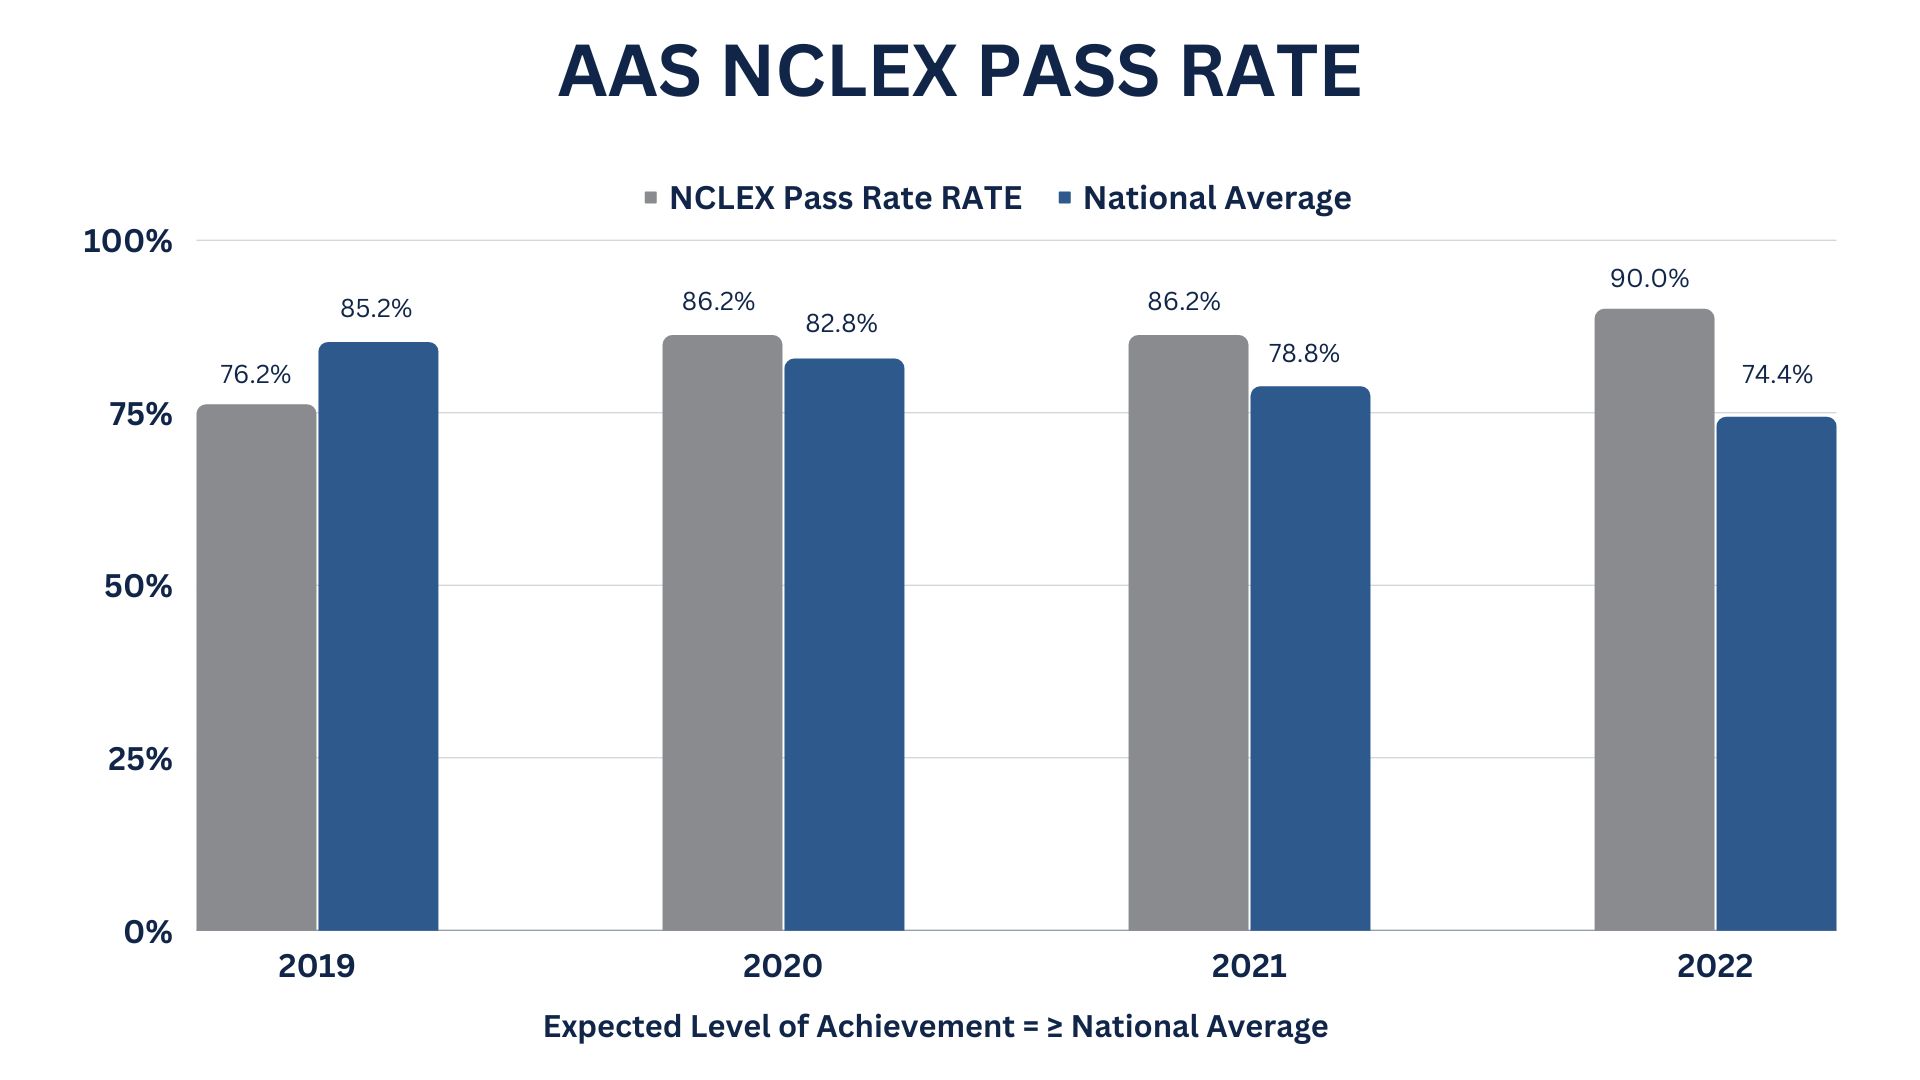  NCLEX Pass Rate